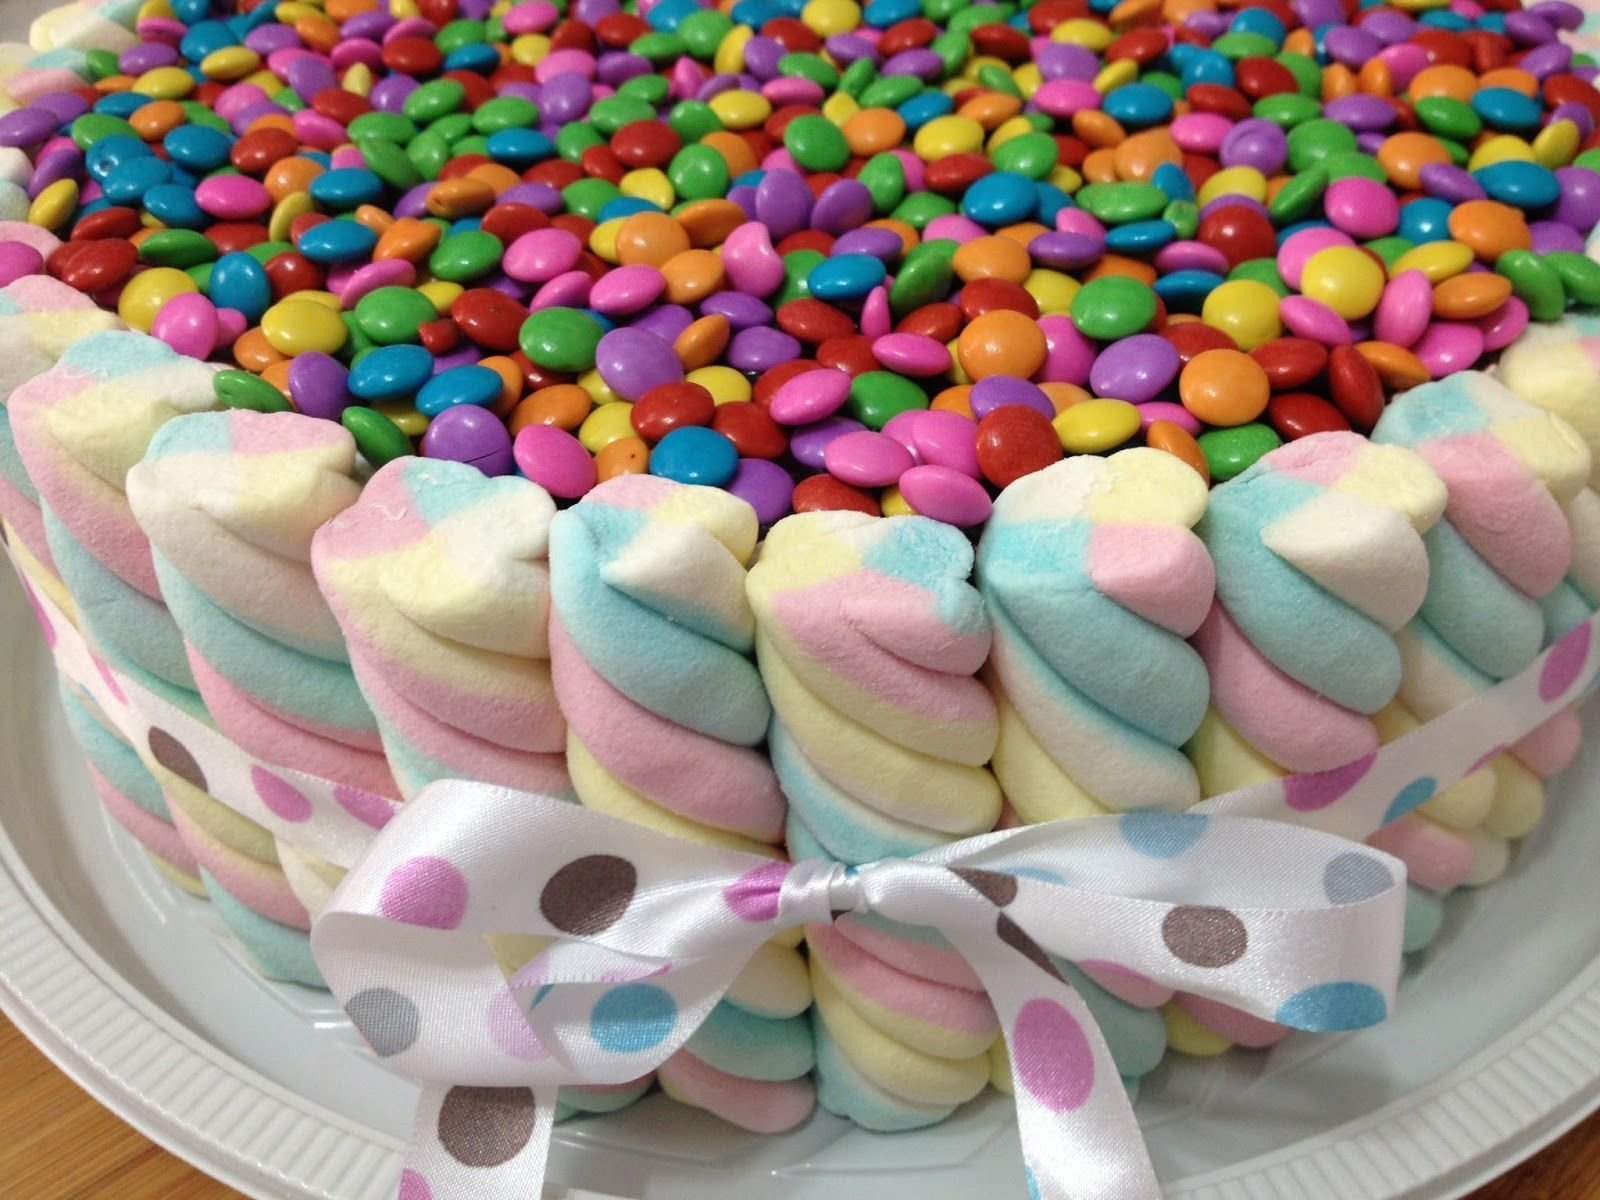 Чем украсить торт в домашних условиях на день рождения: Как украсить торт на день рождения? — ISaloni — студия интерьера, салон обоев